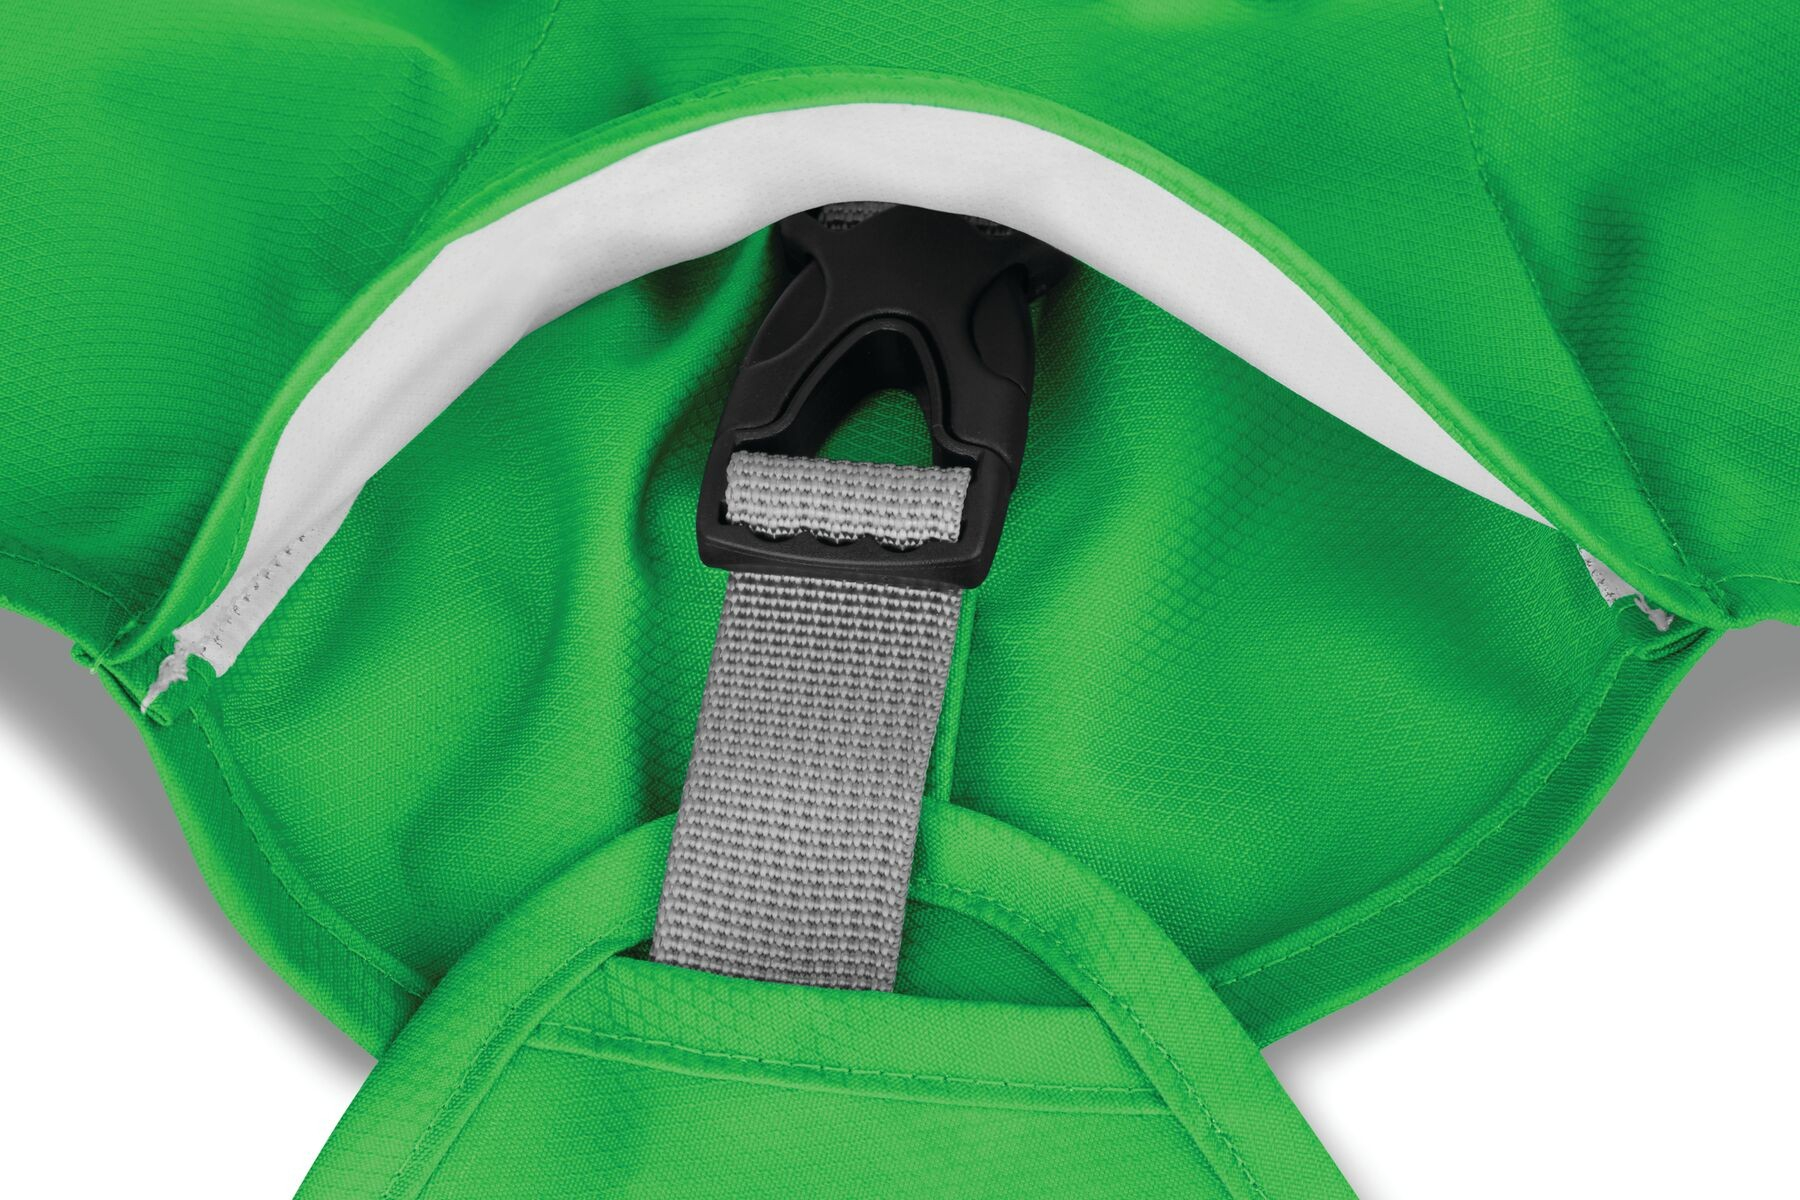 Ruffwear Green Sun Shower Jacket Regenmantel - Erhältlich in mehreren Größen